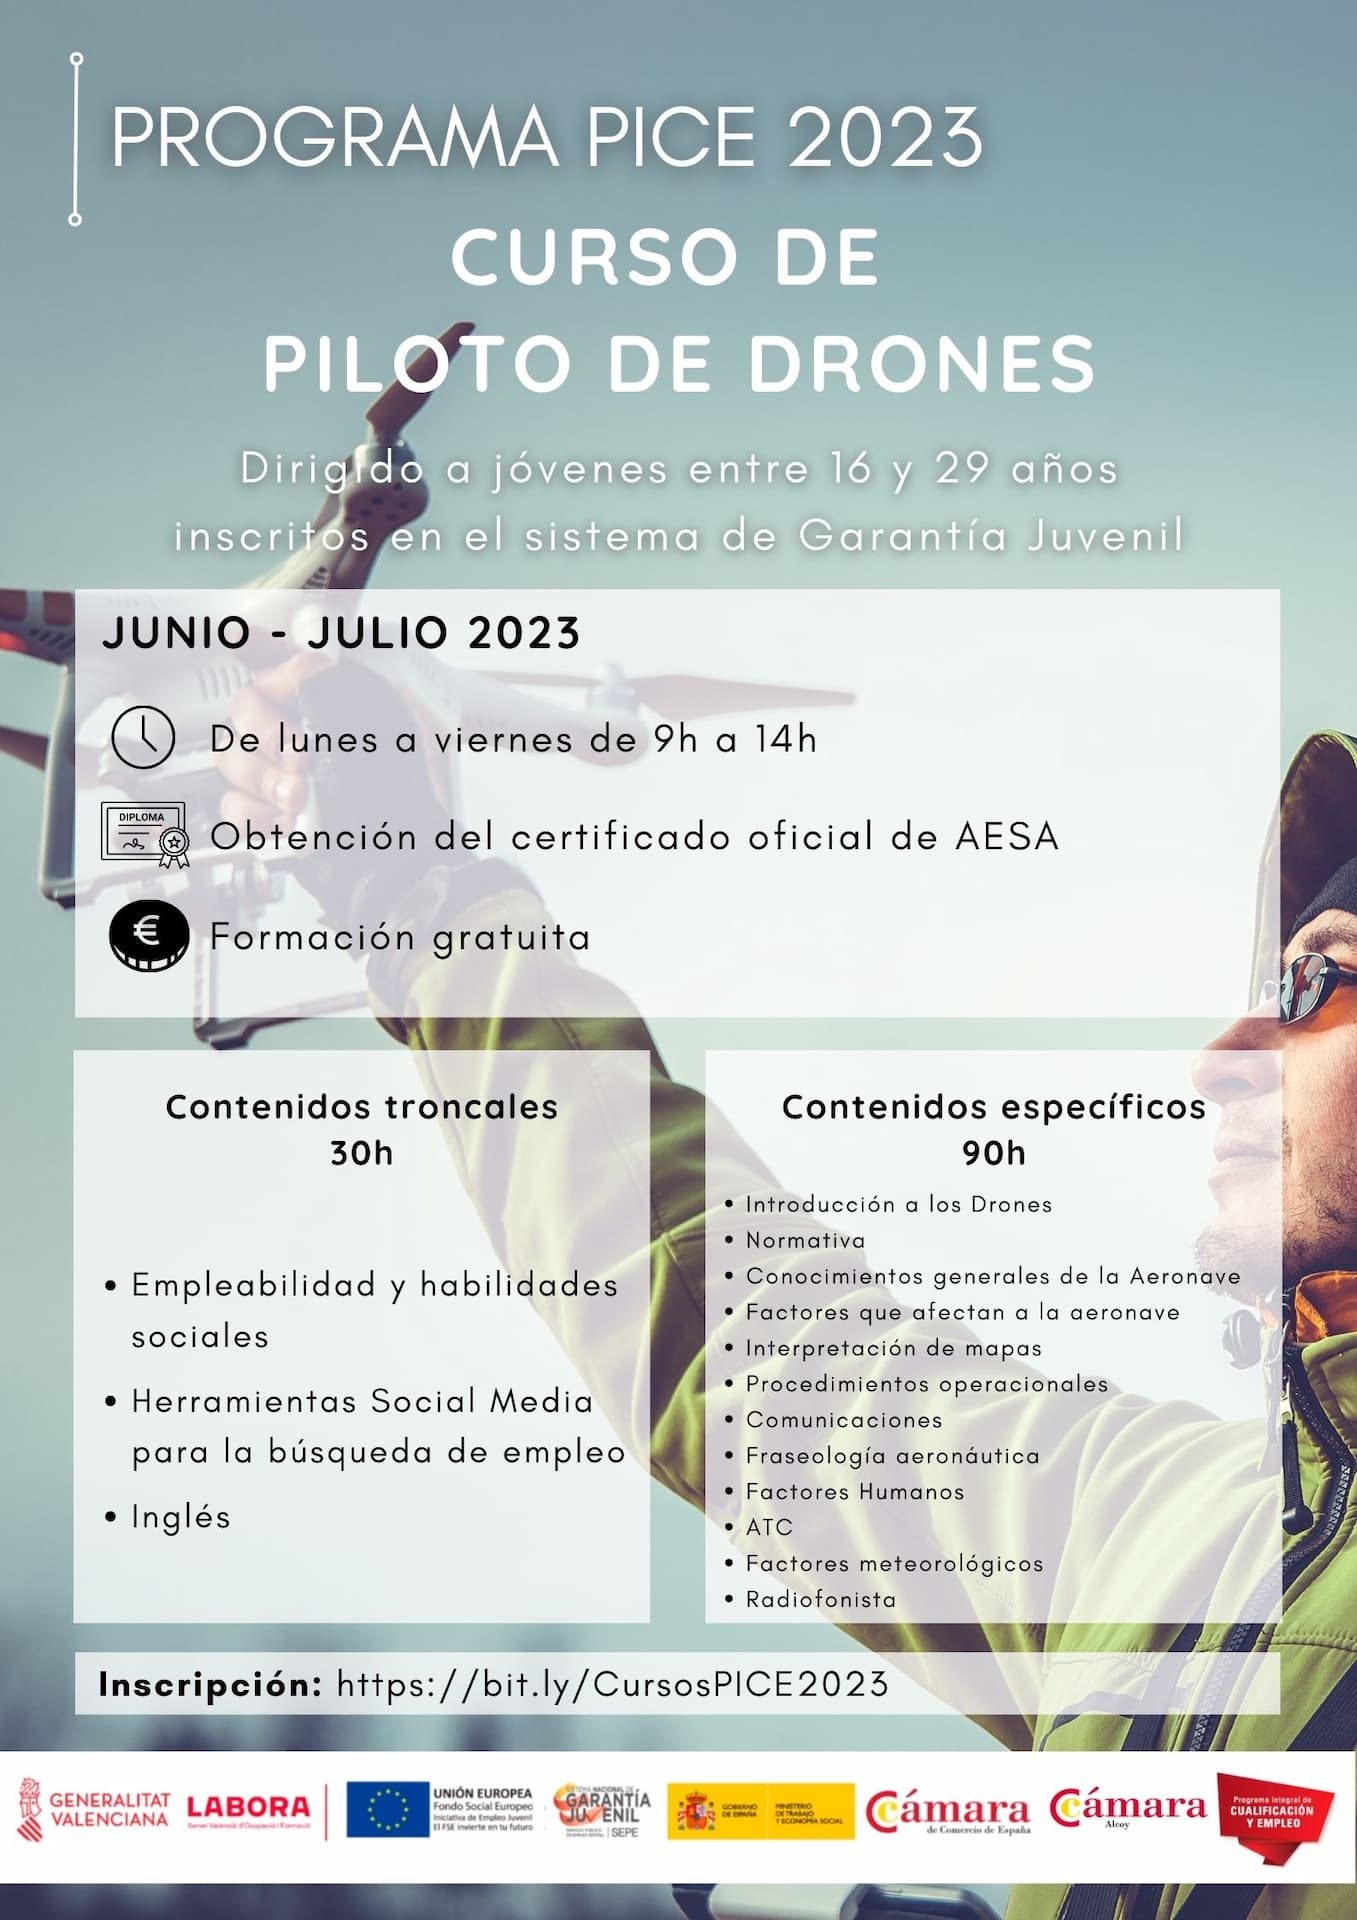 Curso de Piloto de Drones